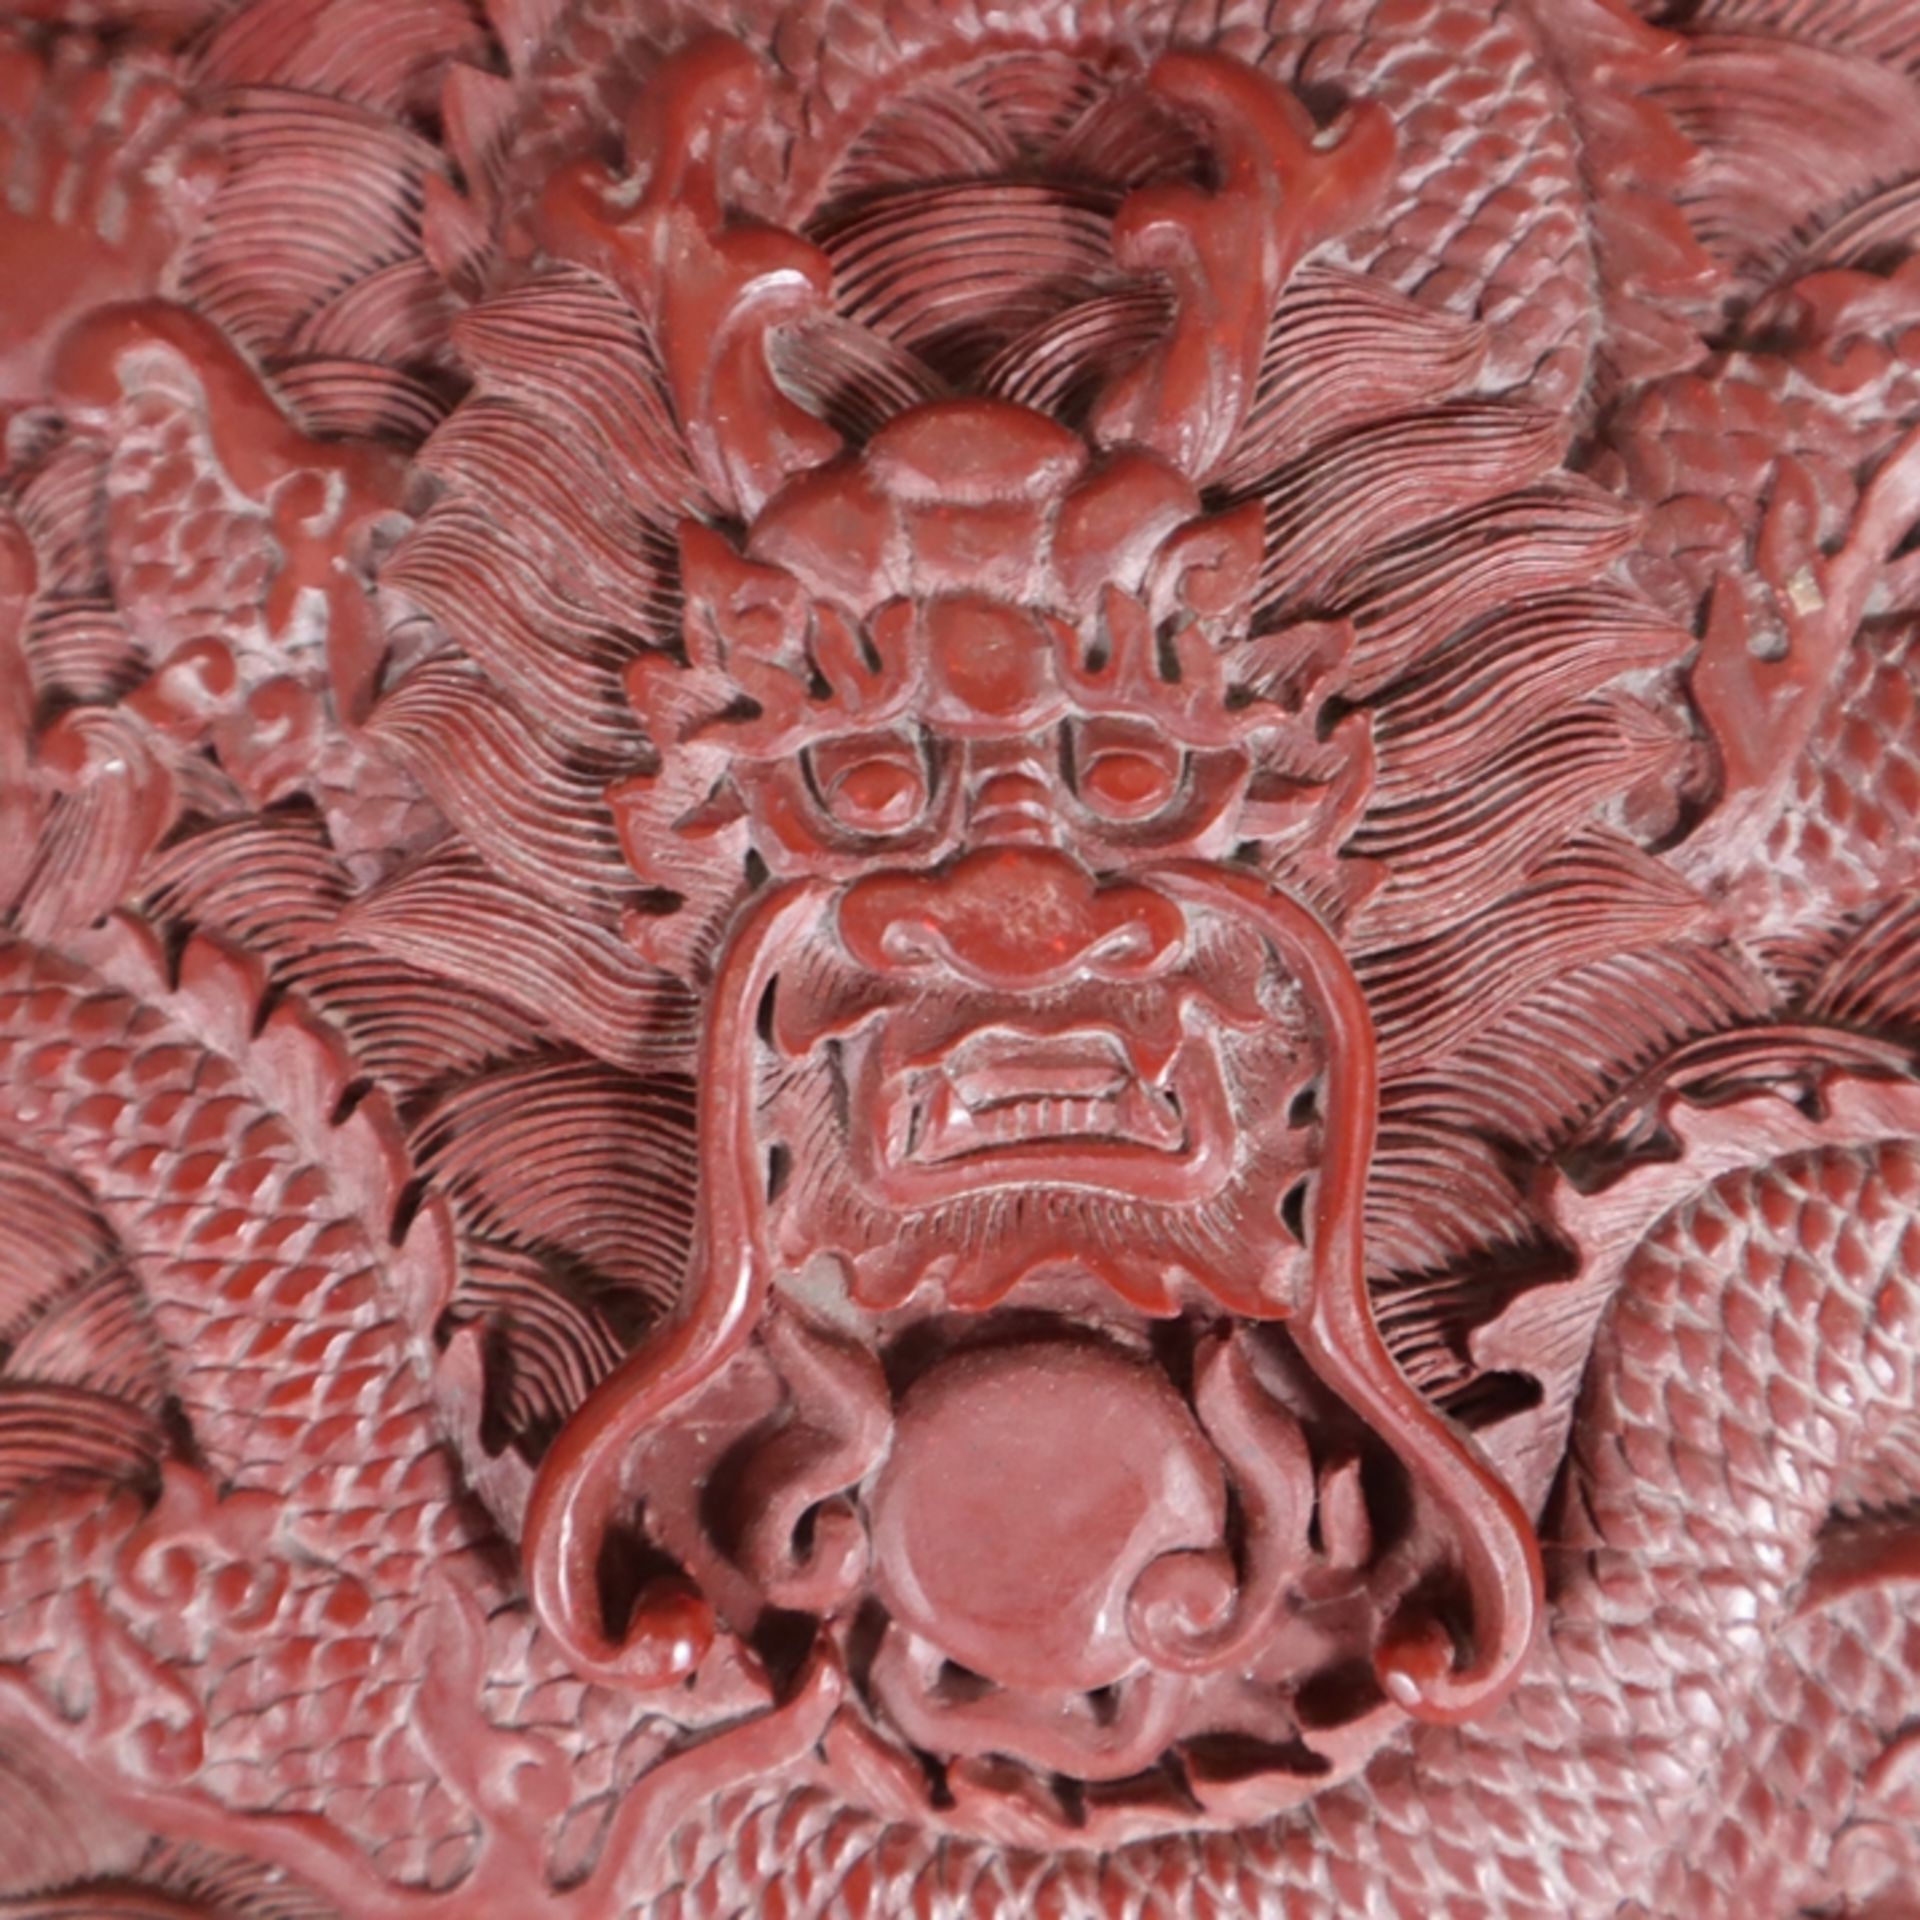 Große Lackplakette - China, roter Lack, rechteckig, in Reliefarbeit gewundener fünfklauiger Drache - Image 2 of 6